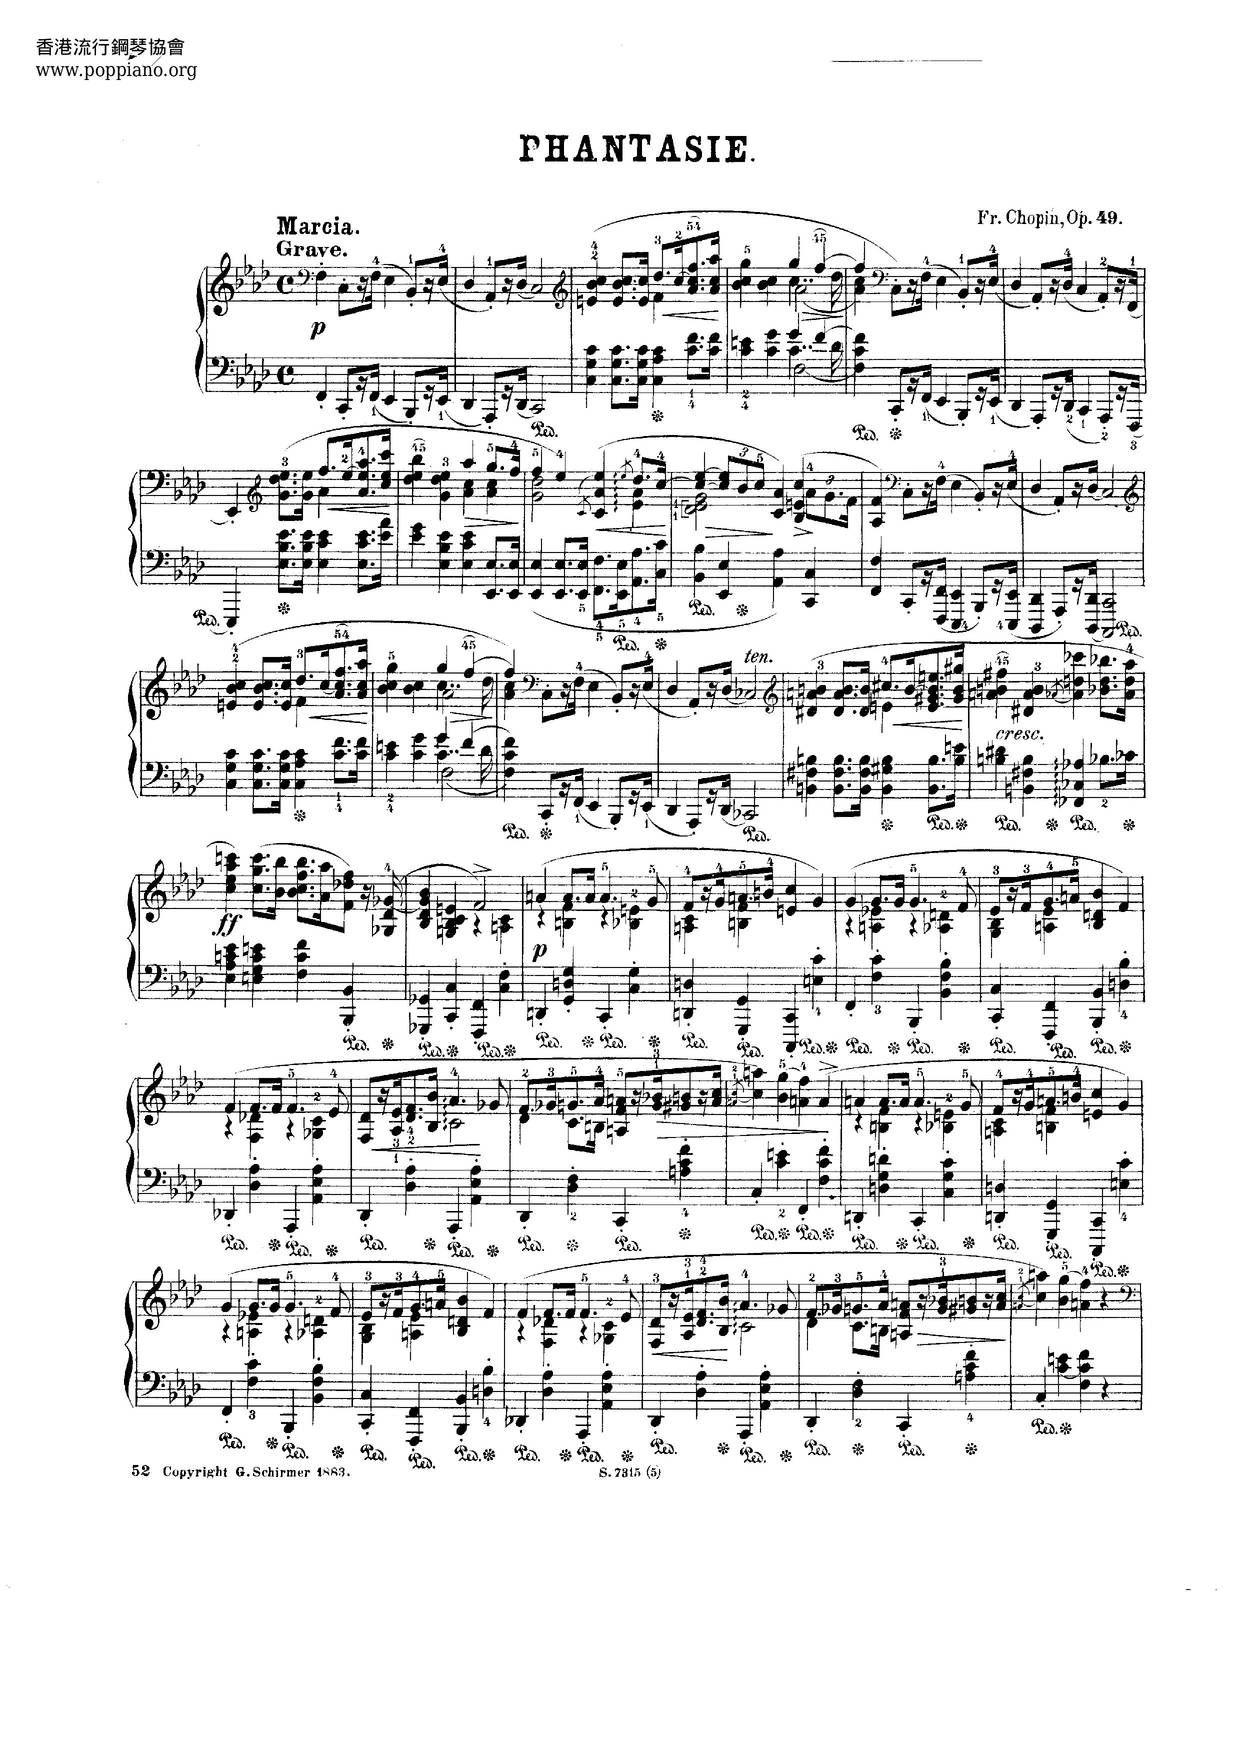 Fantasy, Op. 49ピアノ譜